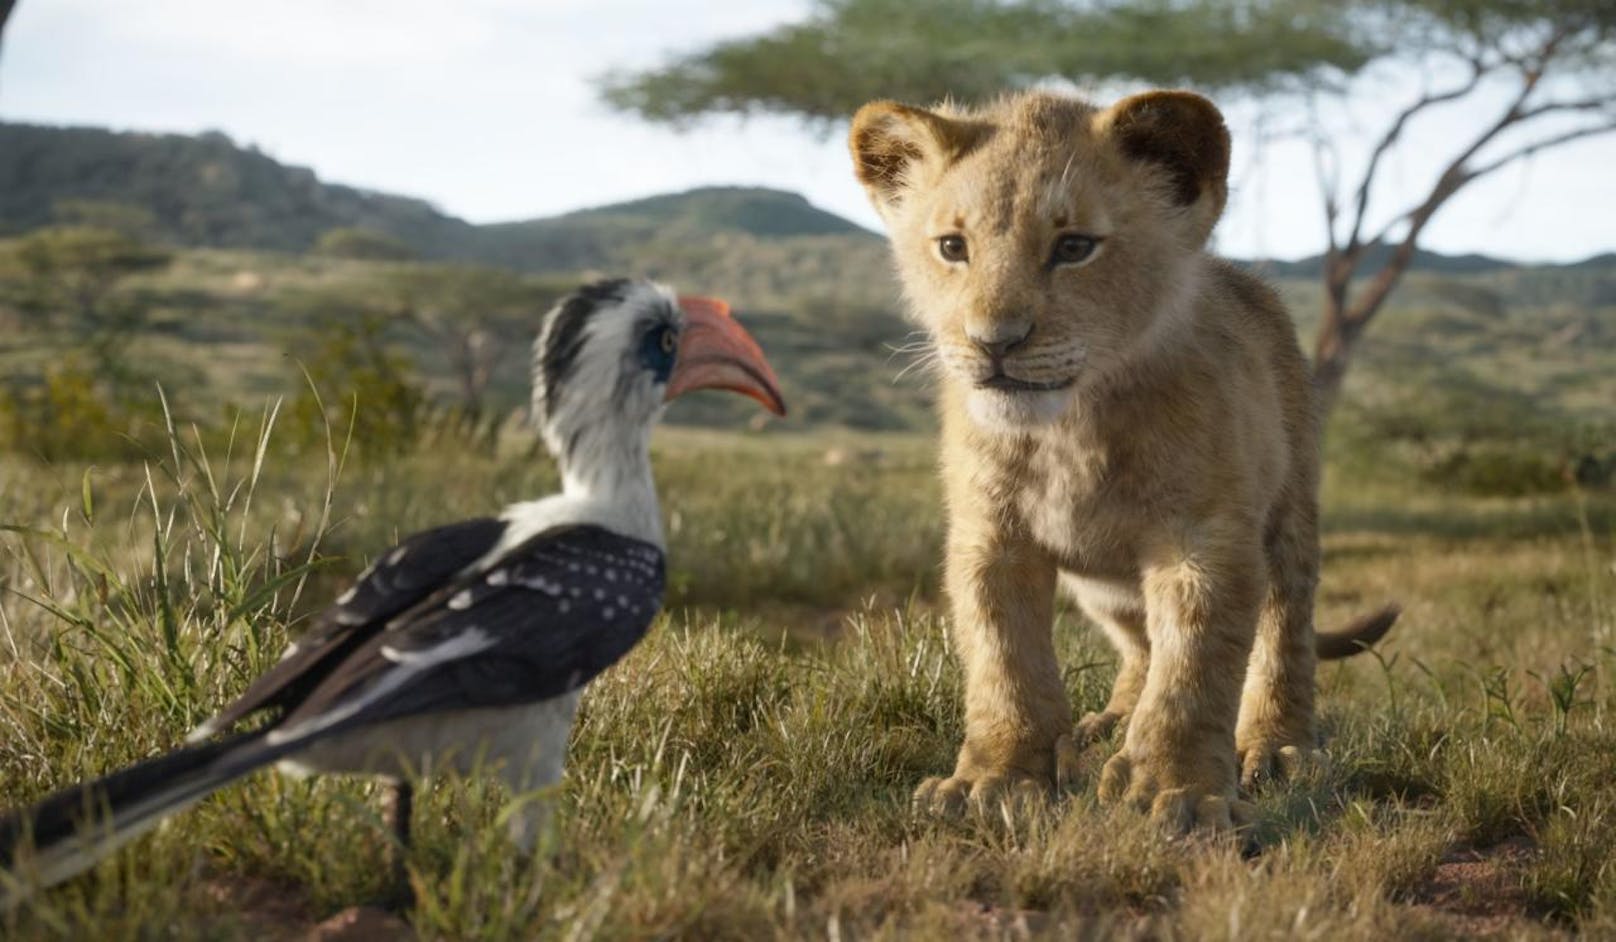 Disneys "Der König der Löwen" erhielt 2019 sein "Live Action"-Remake. Für die bemerkenswerte CGI-Technik gab es auch eine Oscar-Nominierung.